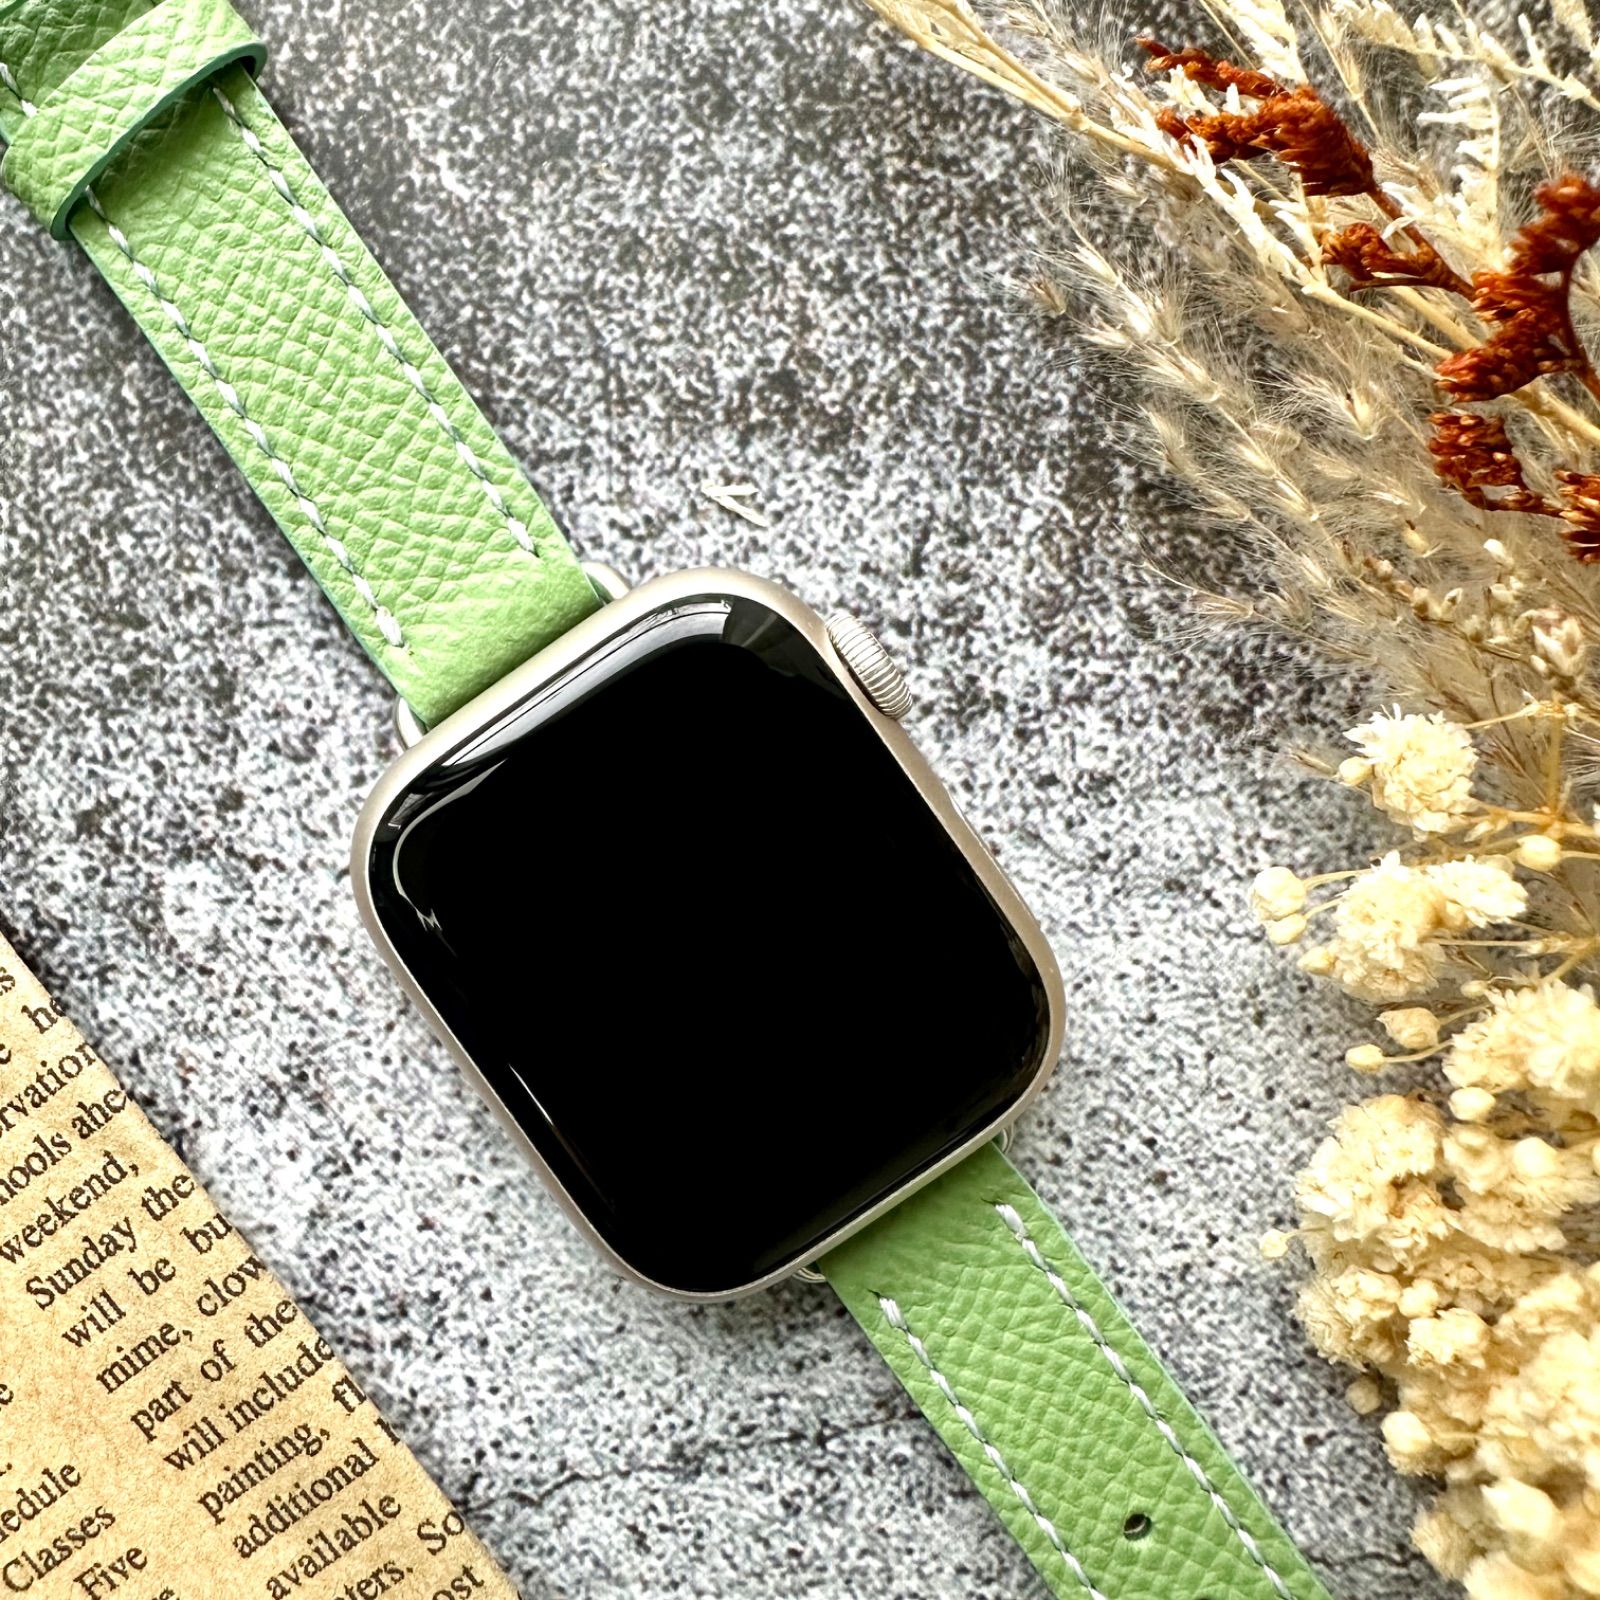 Apple Watch 38 40 41mm レザーバンド グリーン - 時計